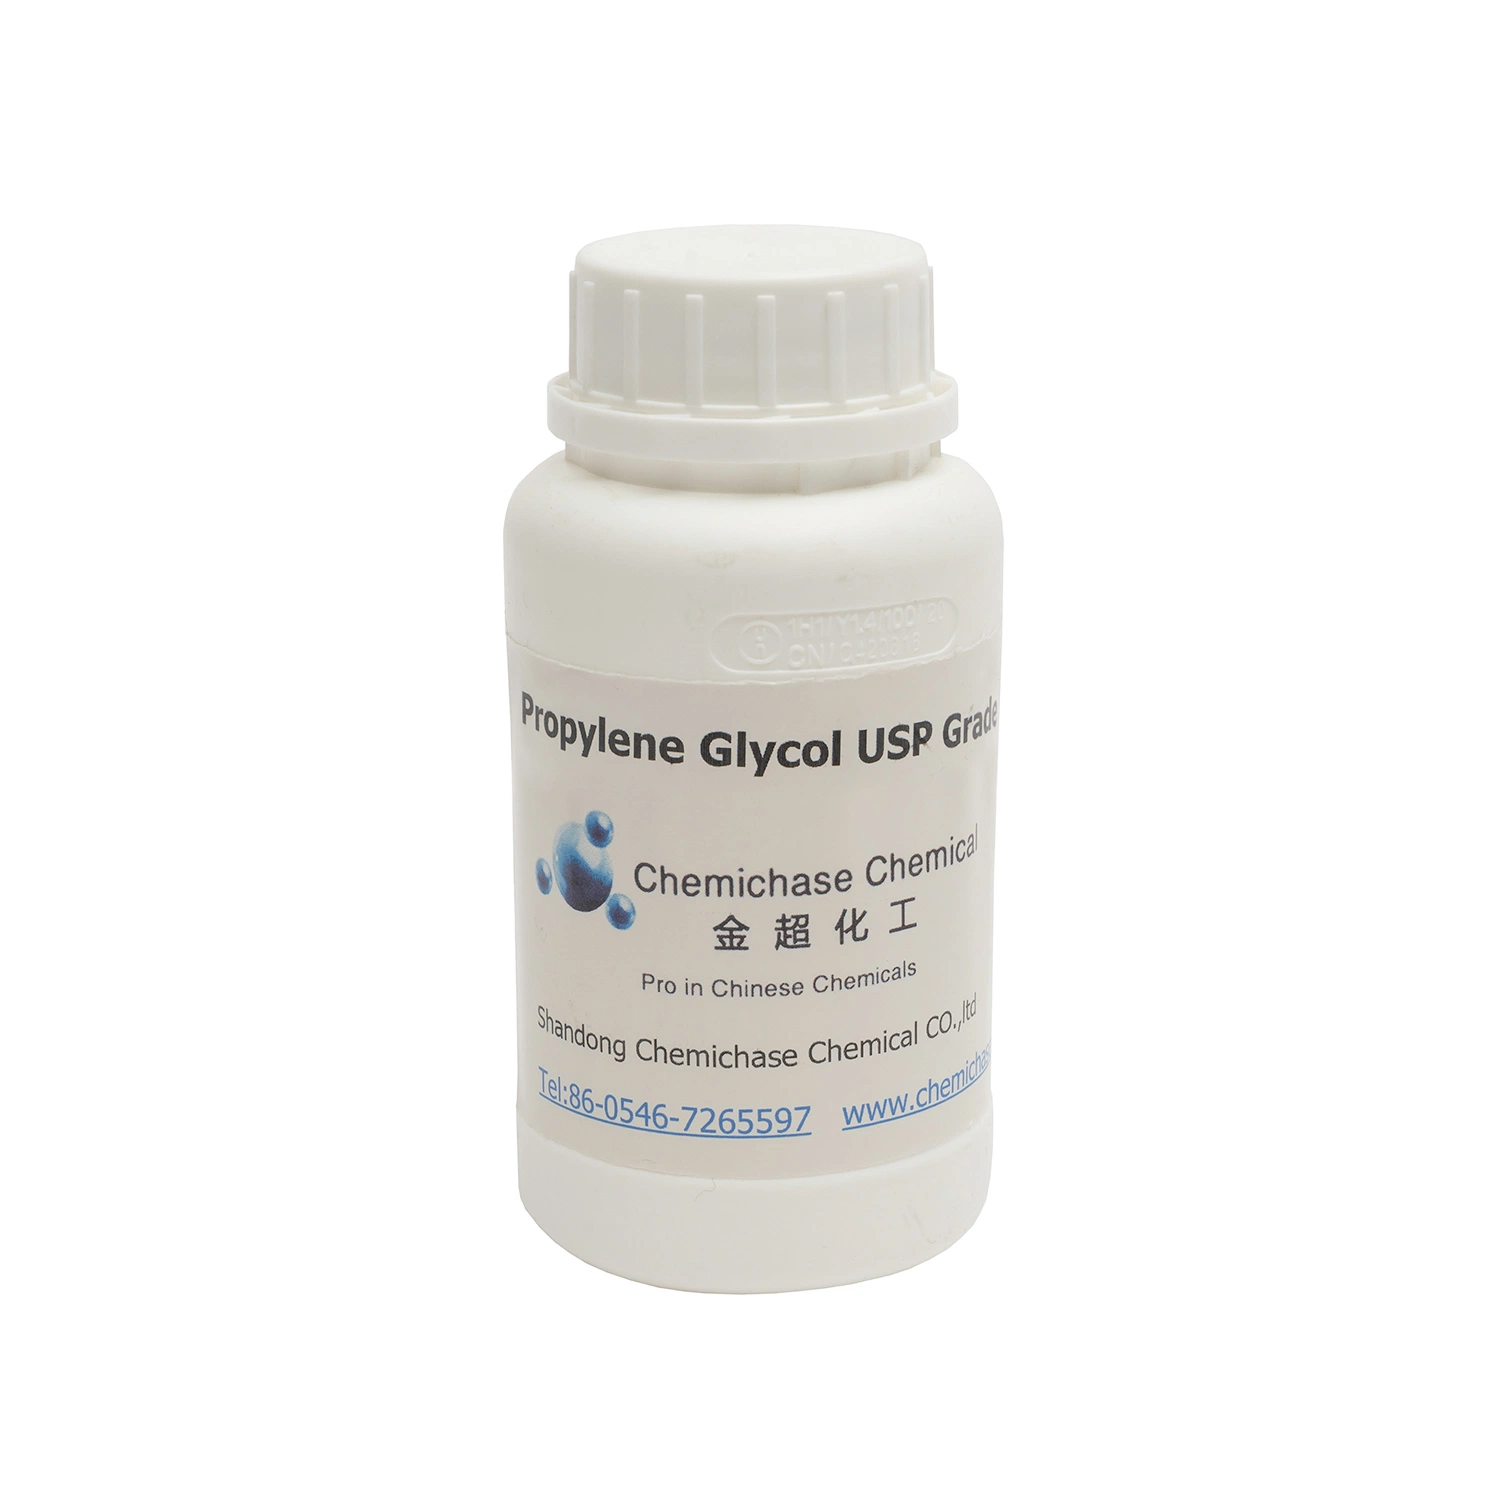 Shandong Chemichase Chemical Glicol de Propileno (PG) para el USD/calidad farmacéutica.